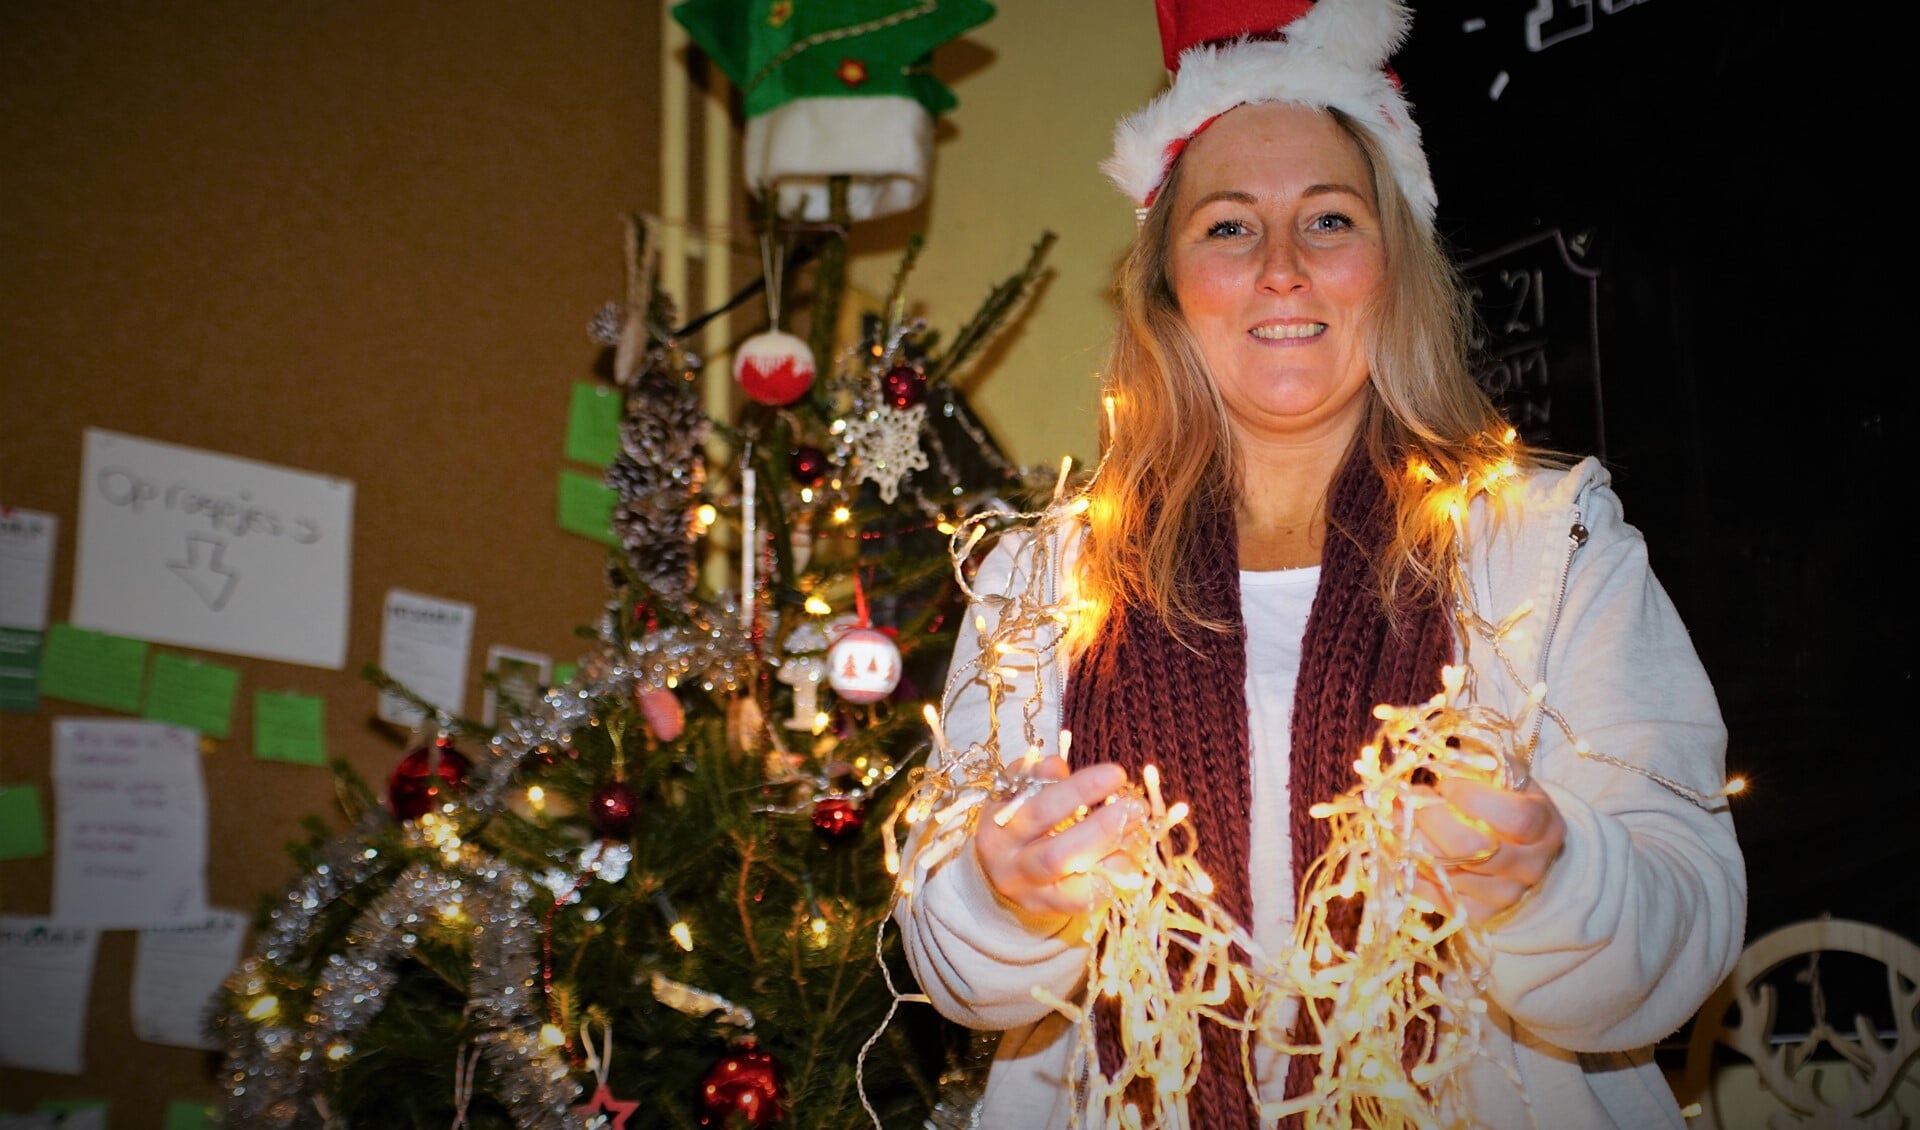 Anita Van der Voort en haar team willen eenzame mensen een echt kerstgevoel bezorgen. 